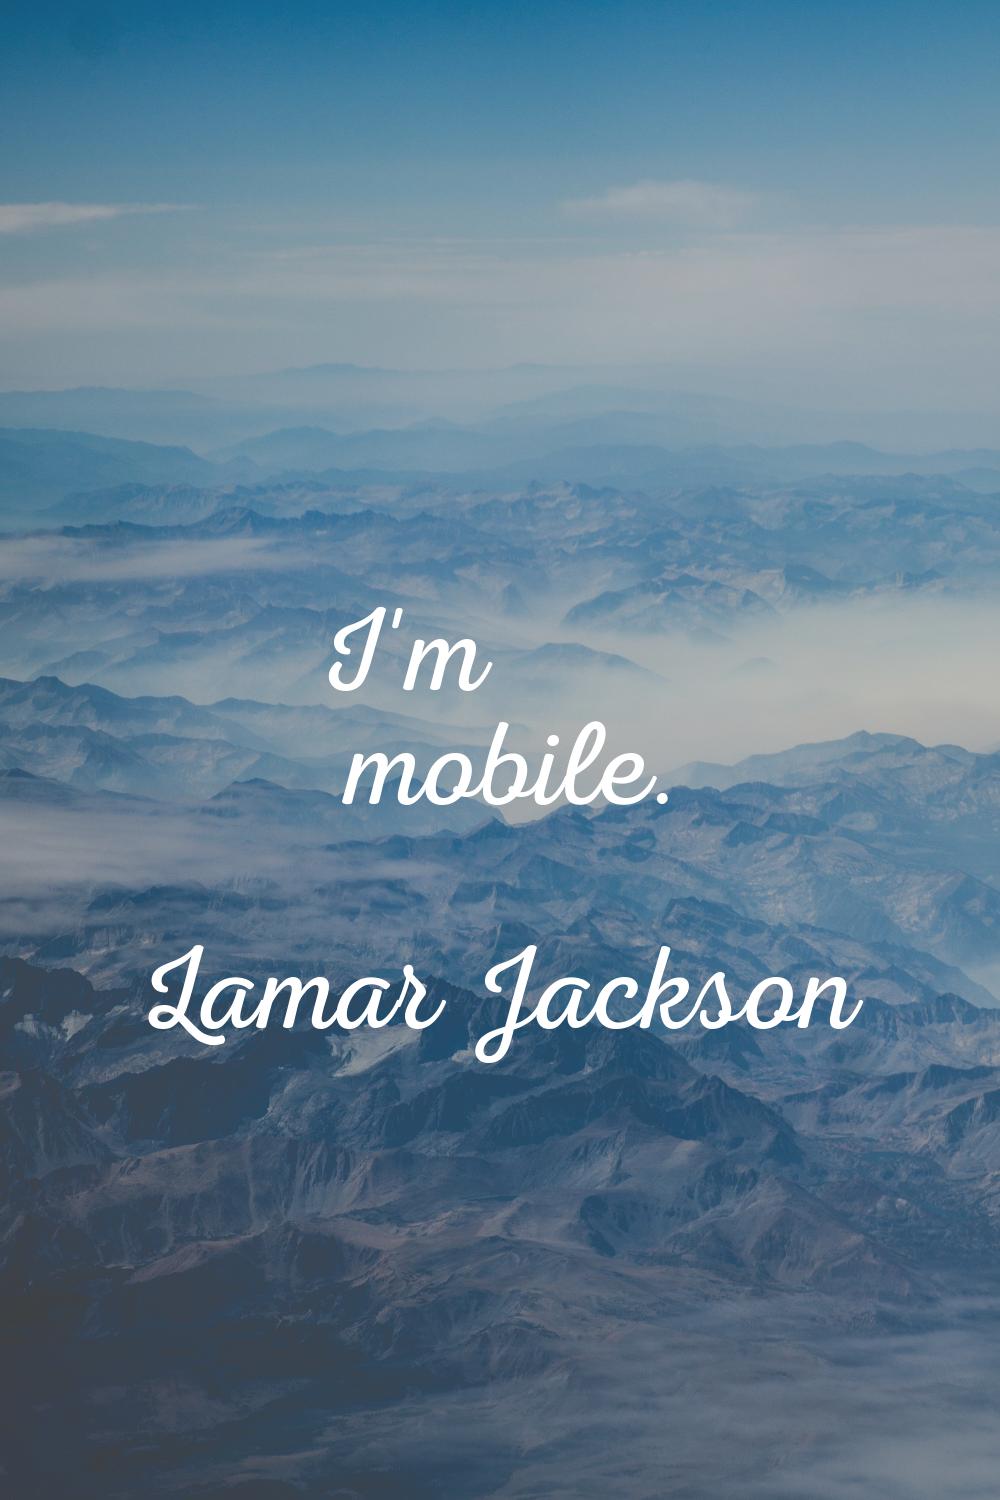 I'm mobile.